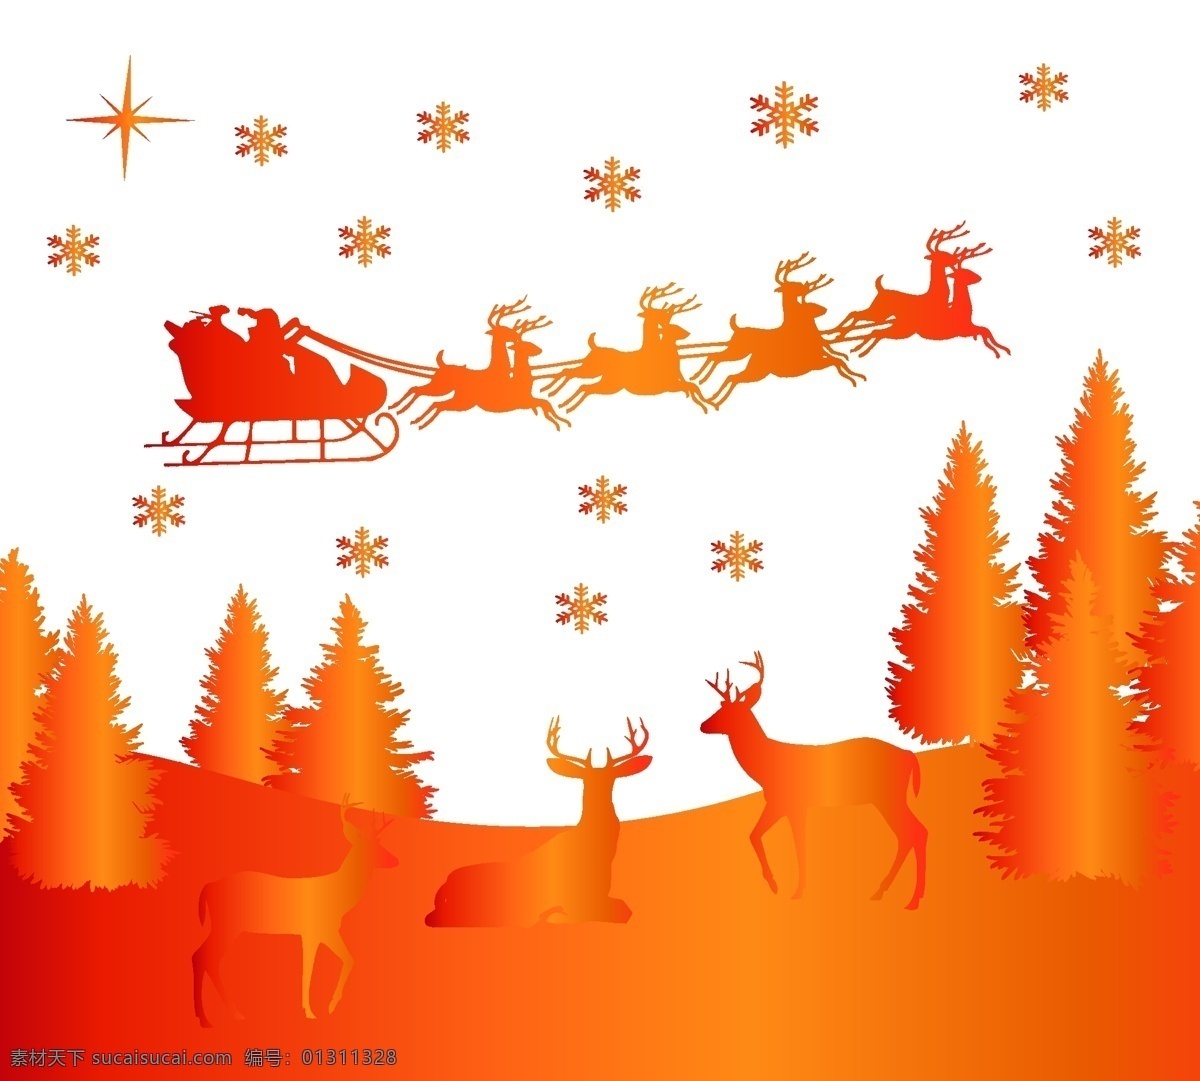 圣诞系列 圣诞 麋鹿 圣诞树 雪花 金红色 镭射效果 动漫动画 风景漫画